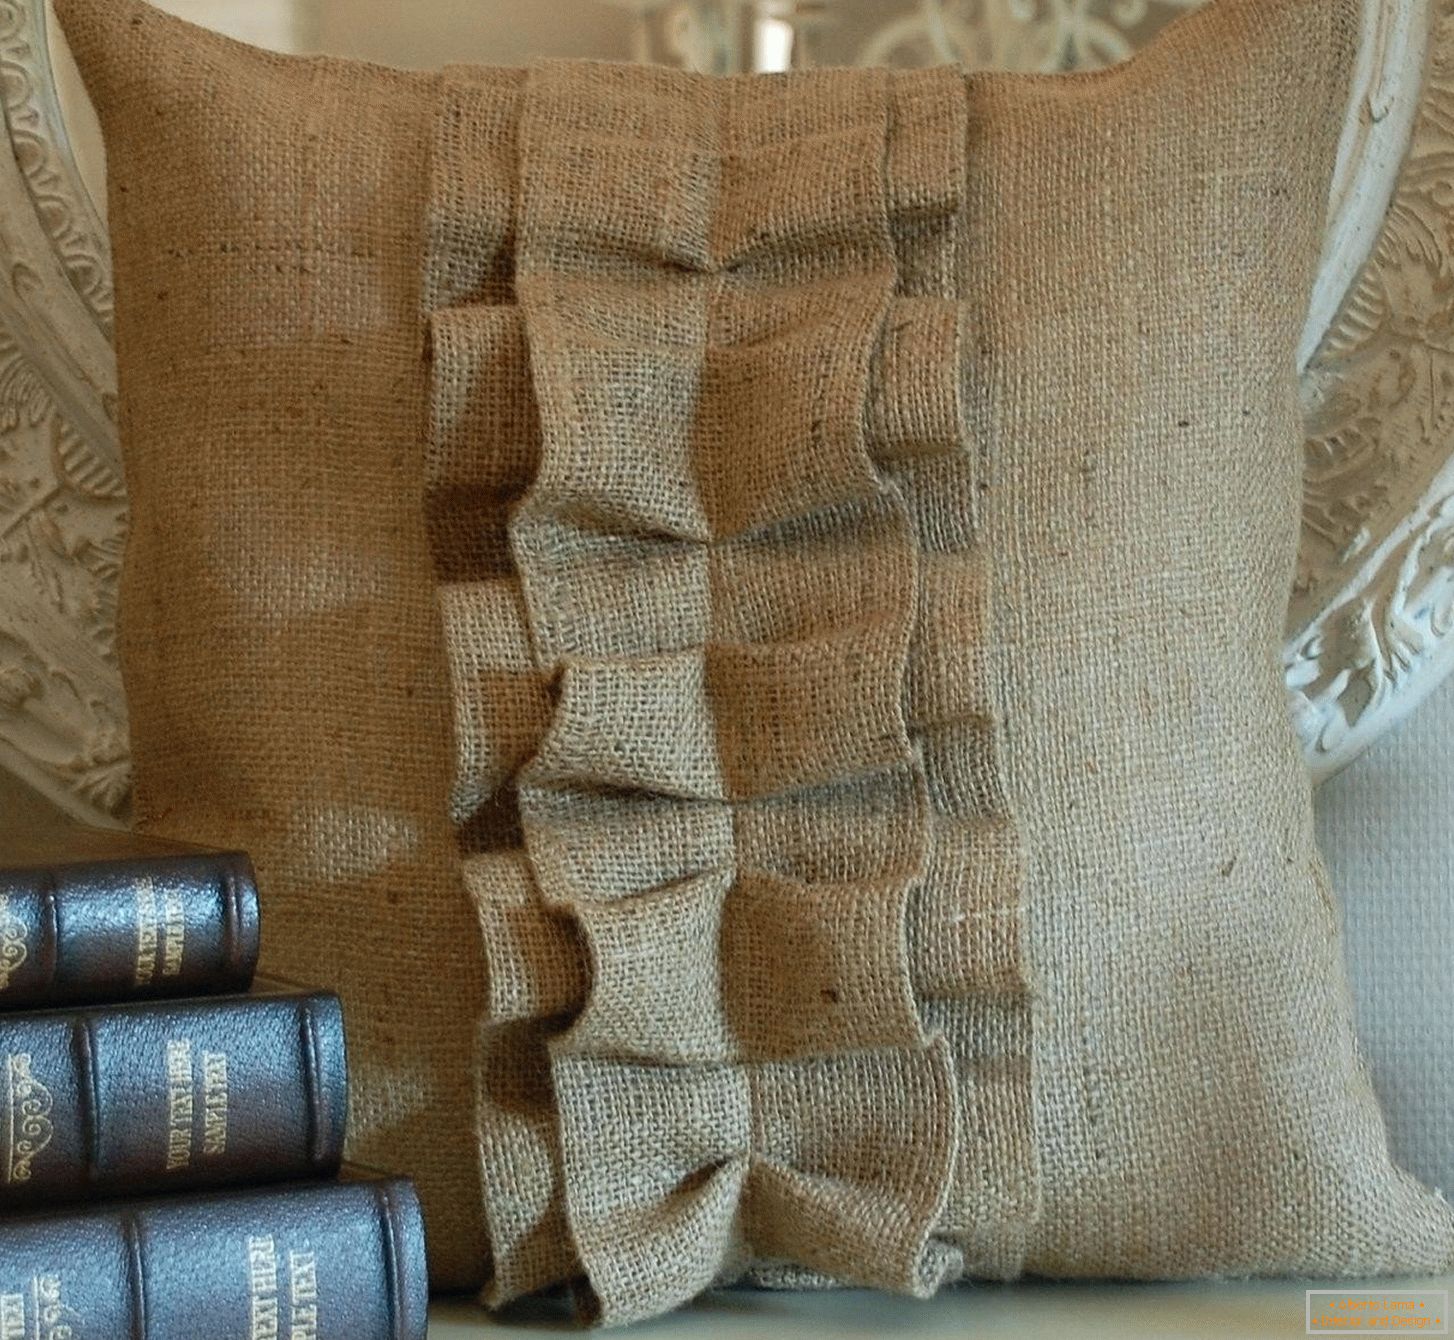 Libri e una borsa di tela